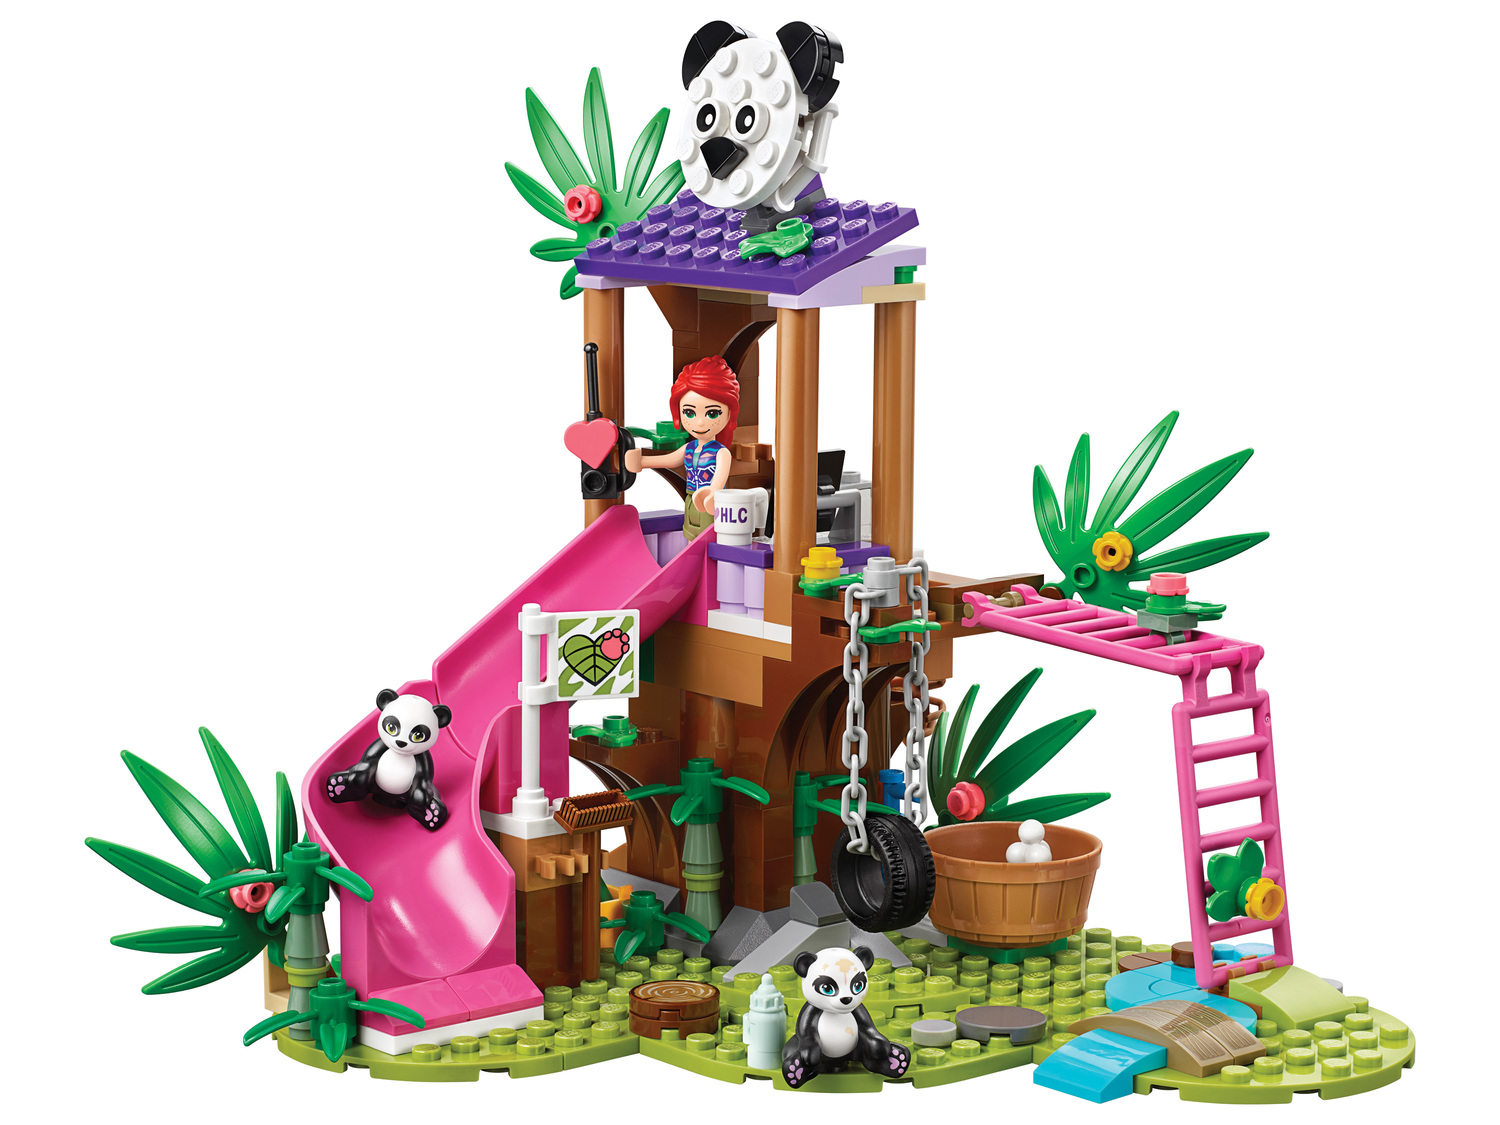 Klocki LEGO 41422 Lego, cena 99,00 PLN  
-  domek pand na drzewie
Opis